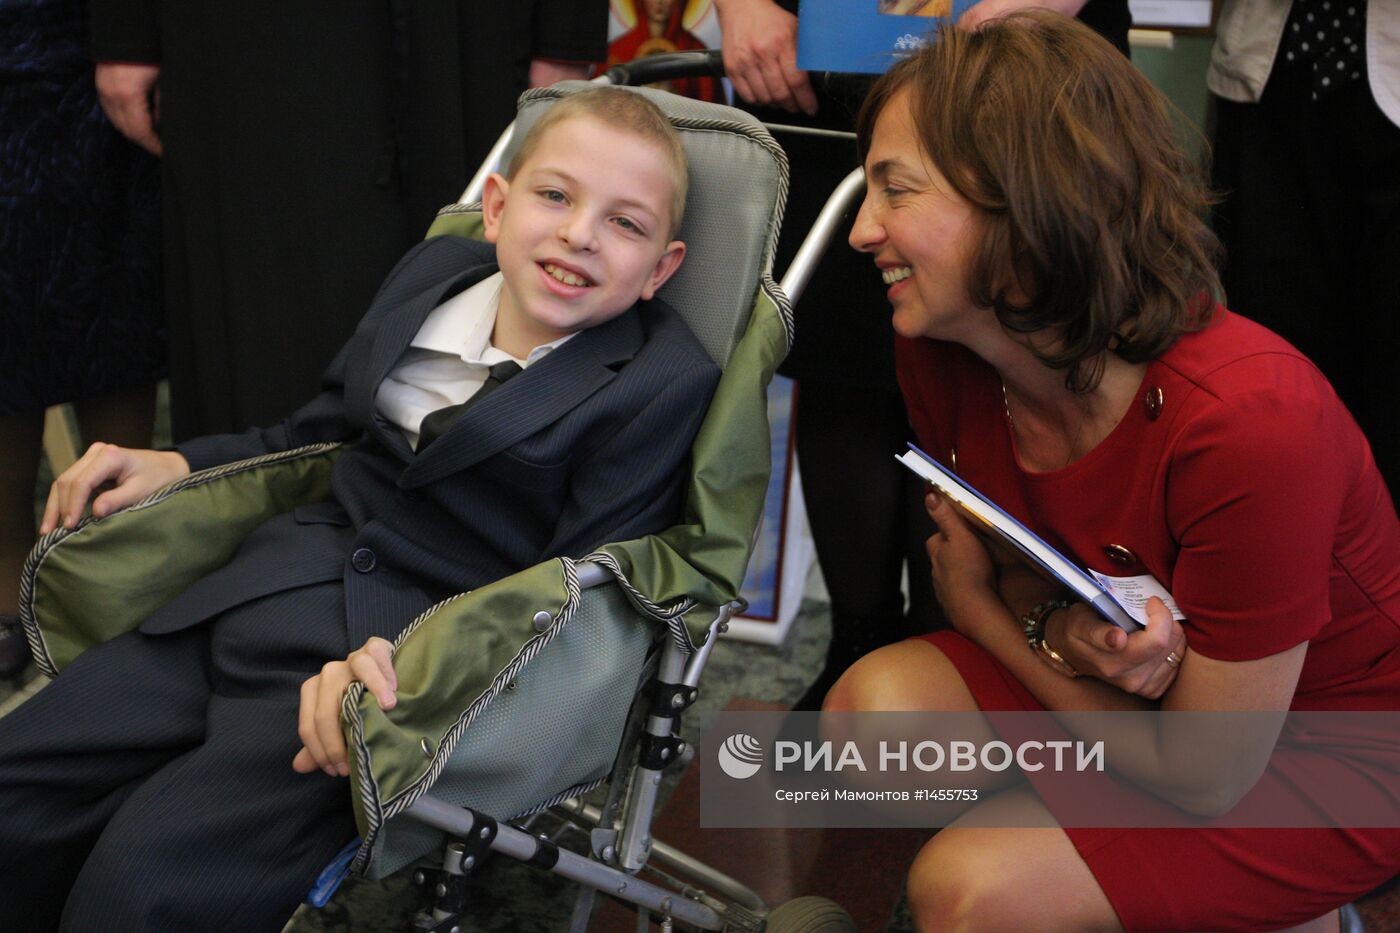 Т.Рогозина открыла выставку детских работ в Госдуме РФ